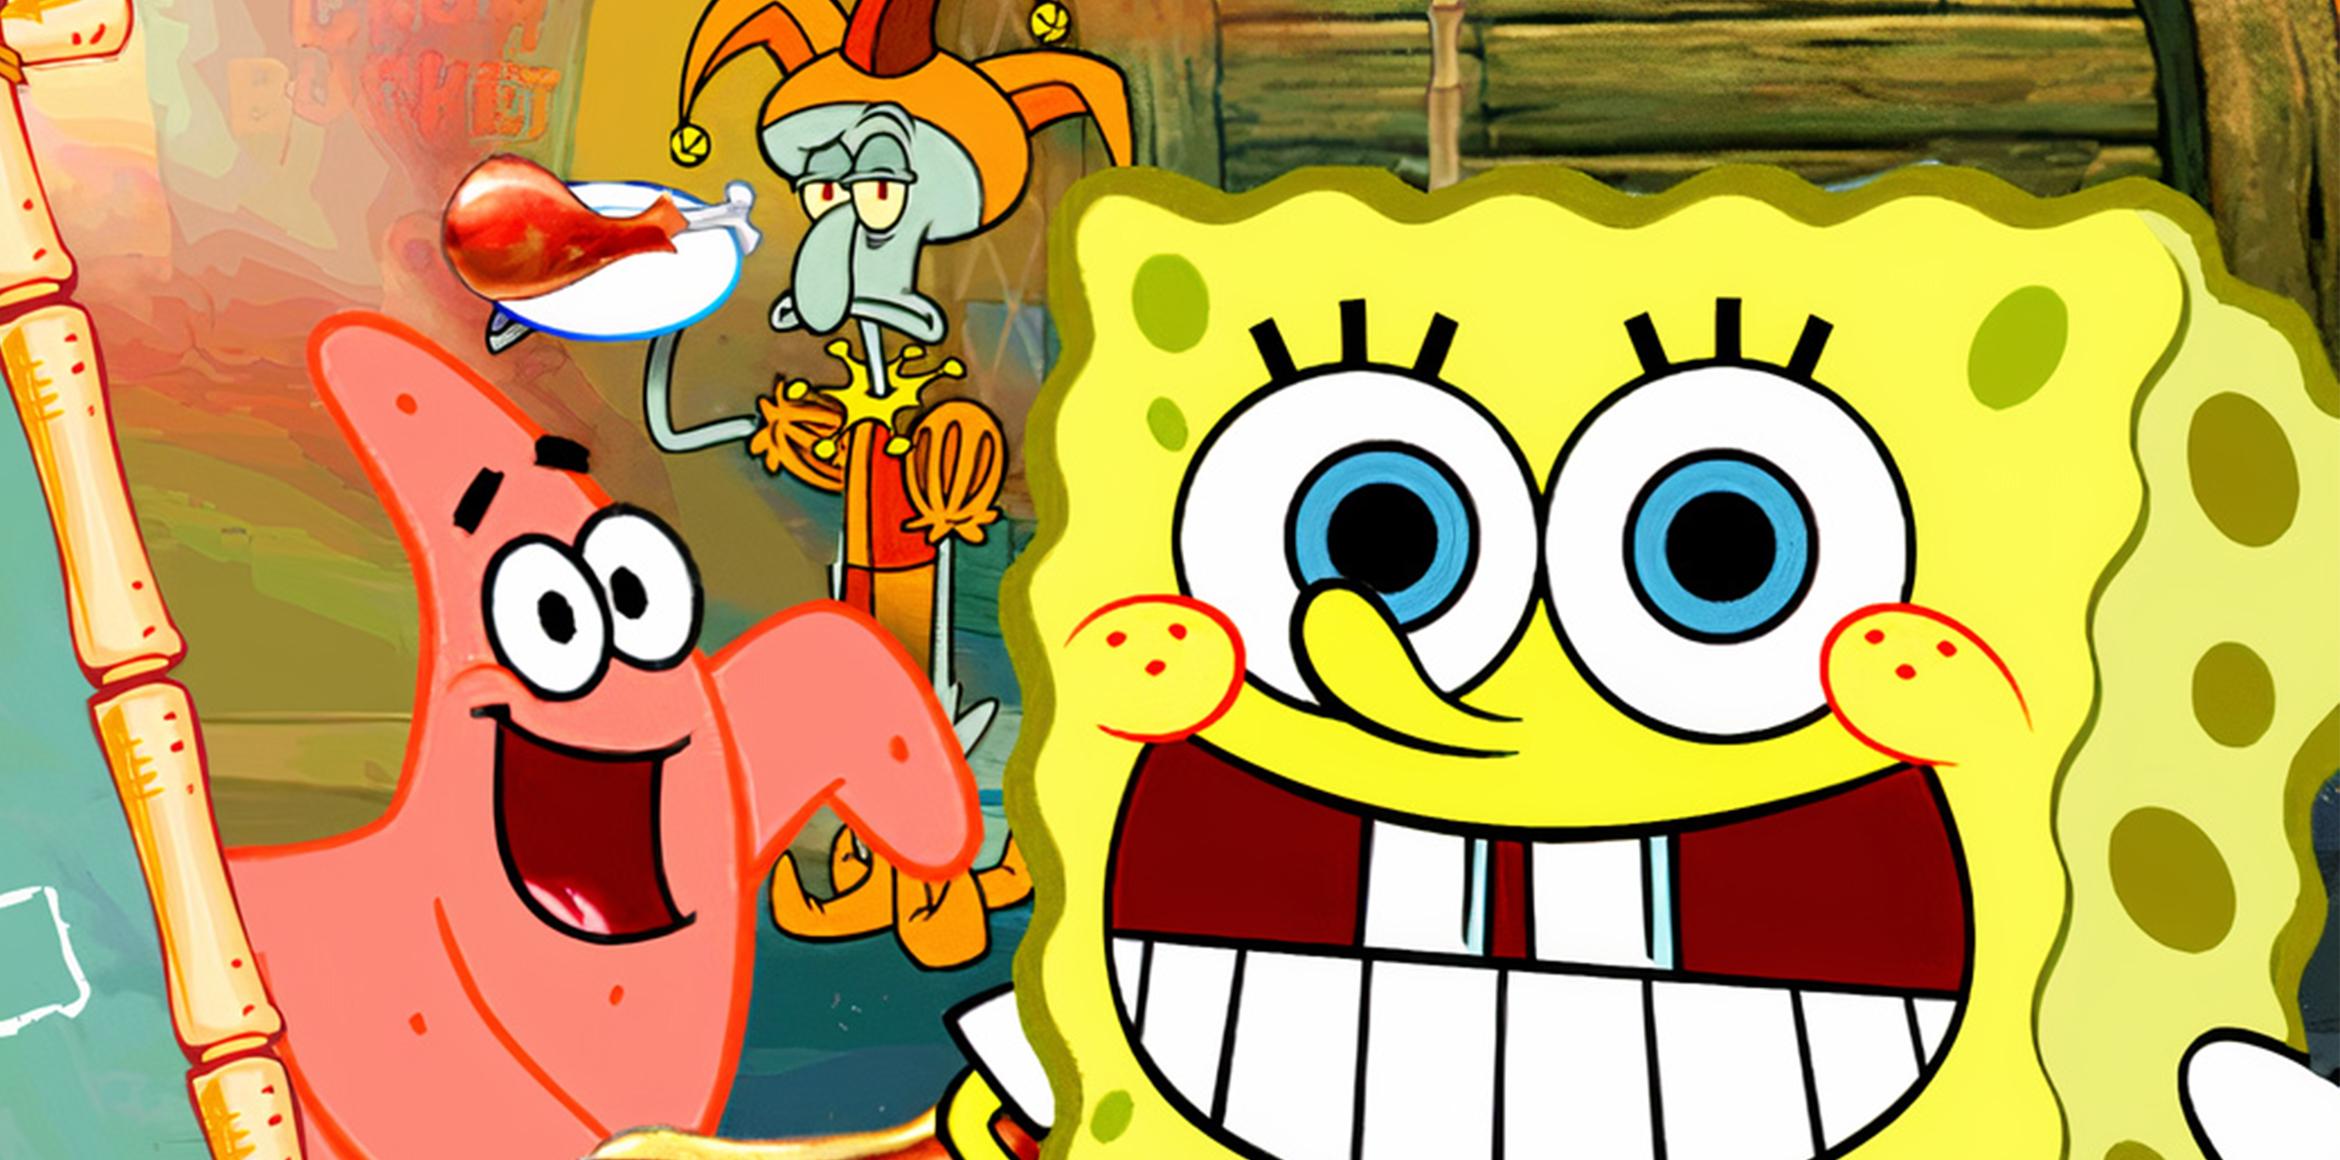 Games like SpongeBob Diner Dash • Games similar to SpongeBob Diner